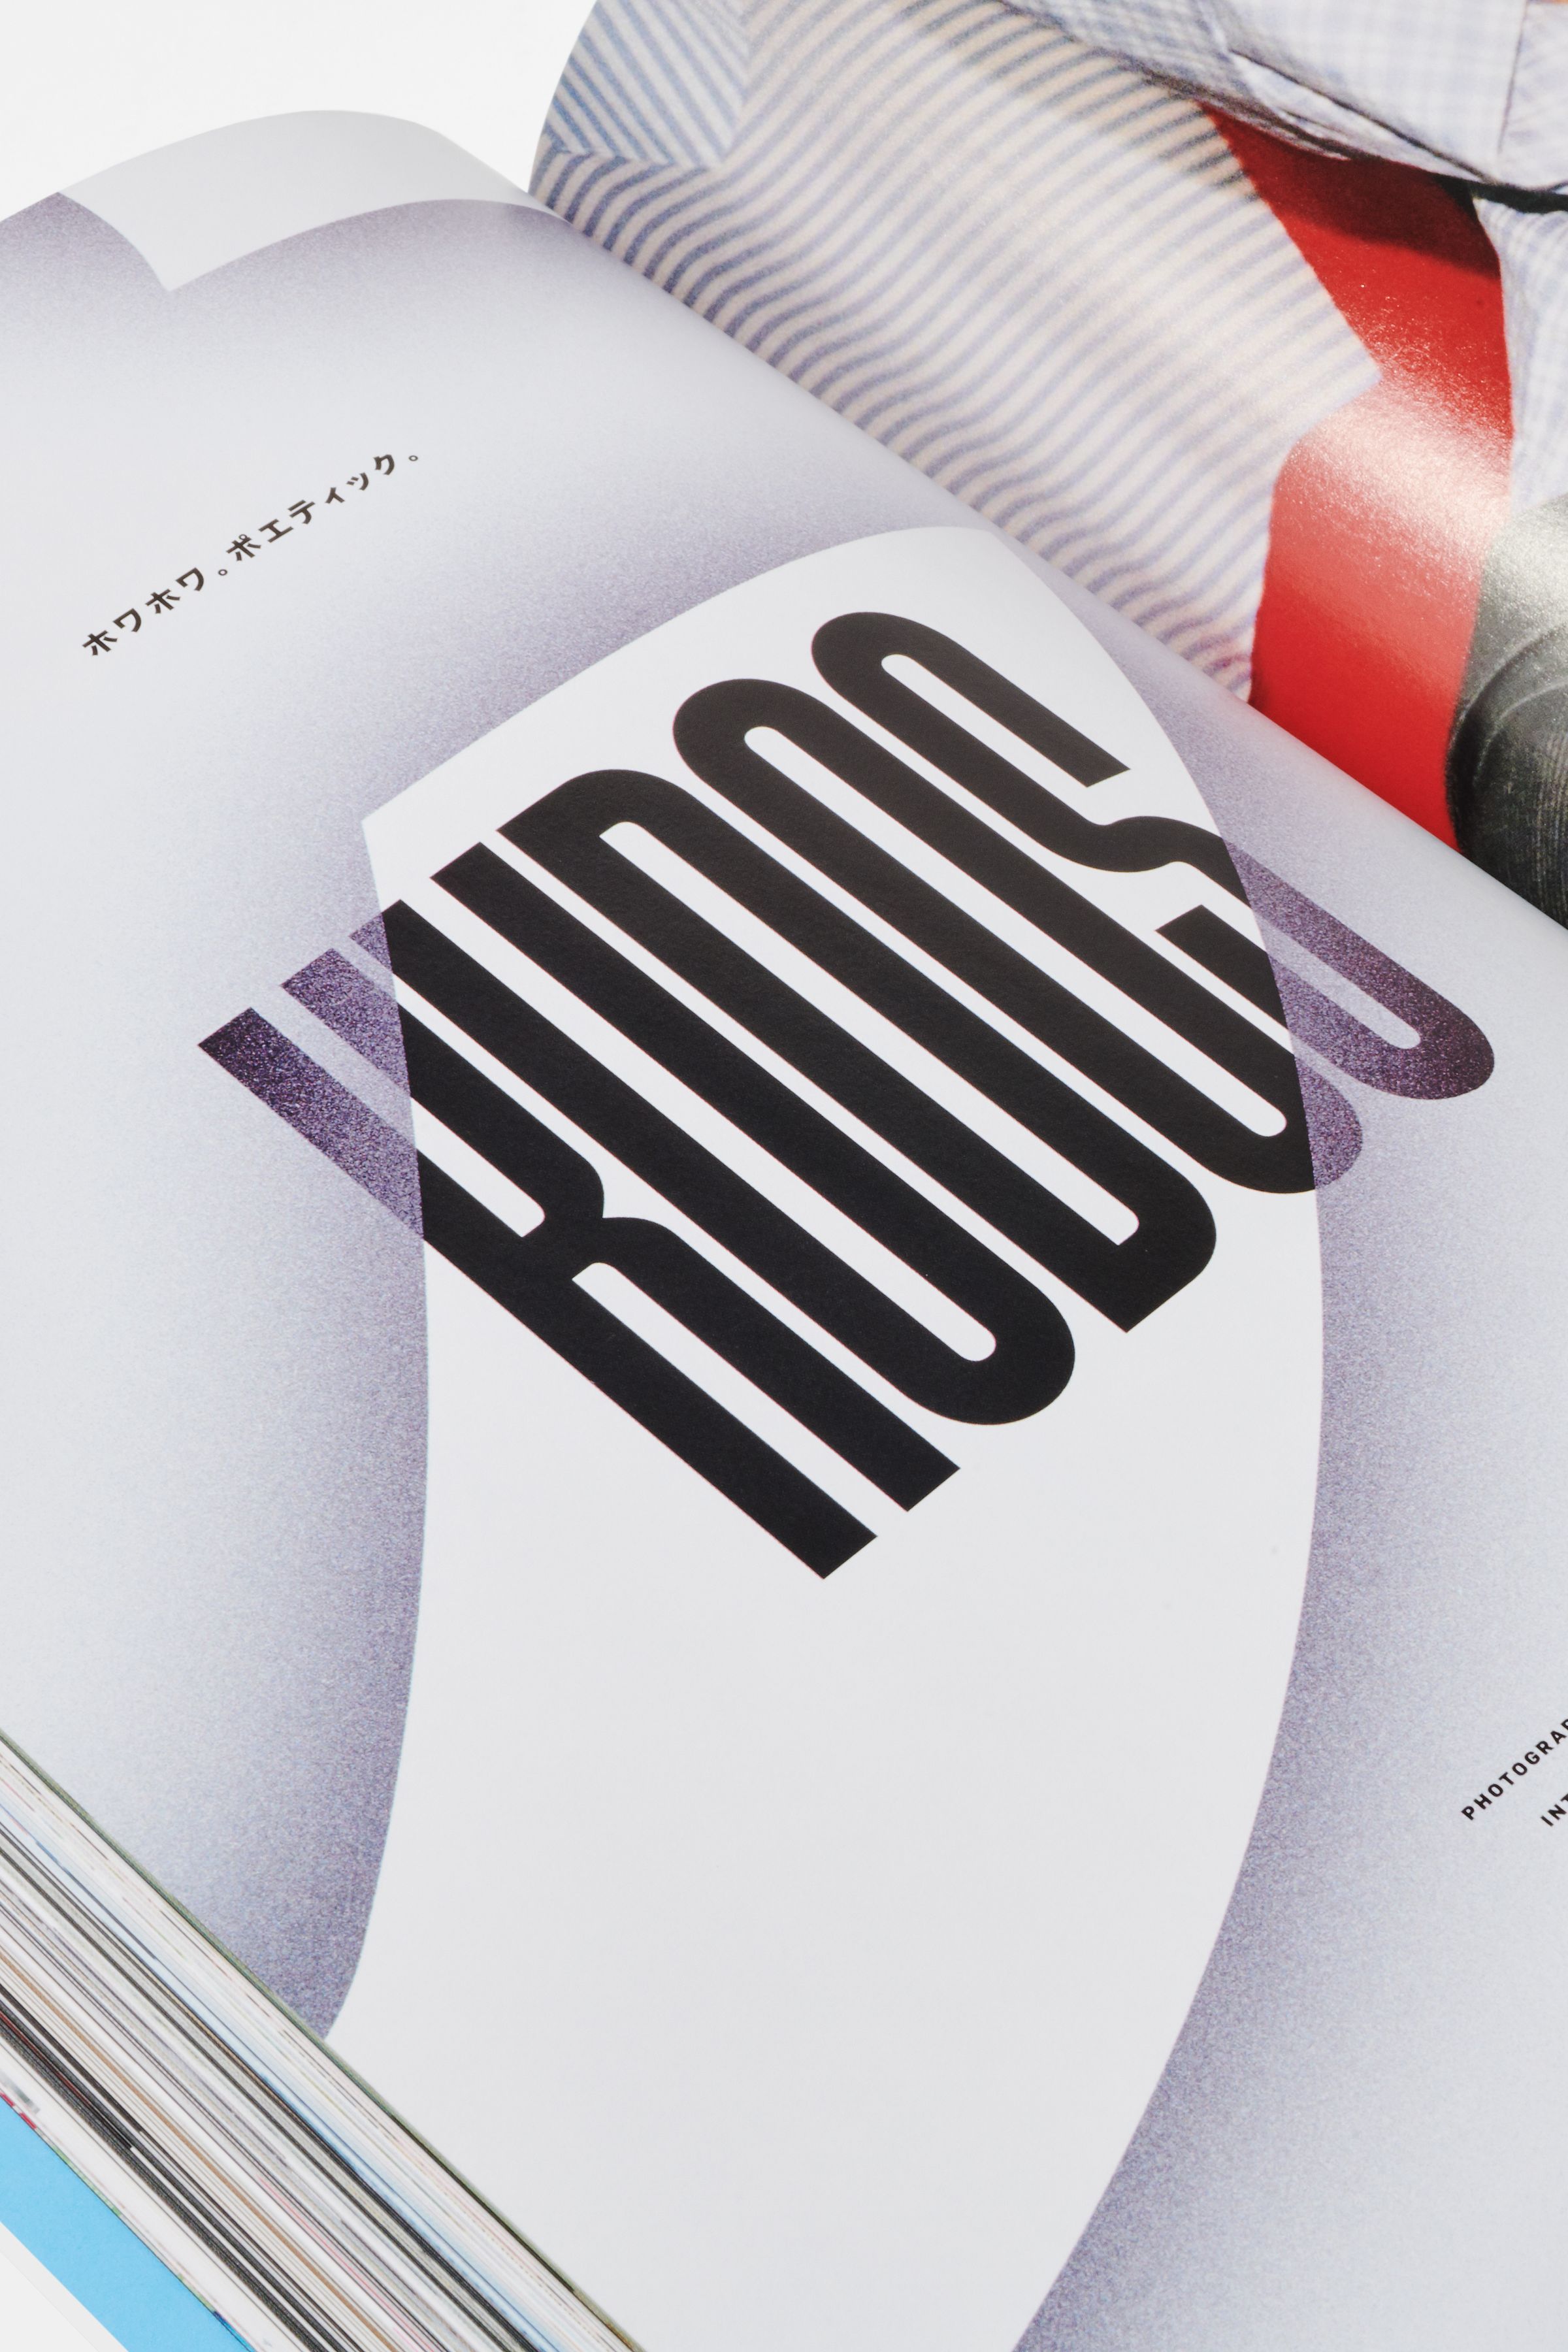 Free Magazine typography design